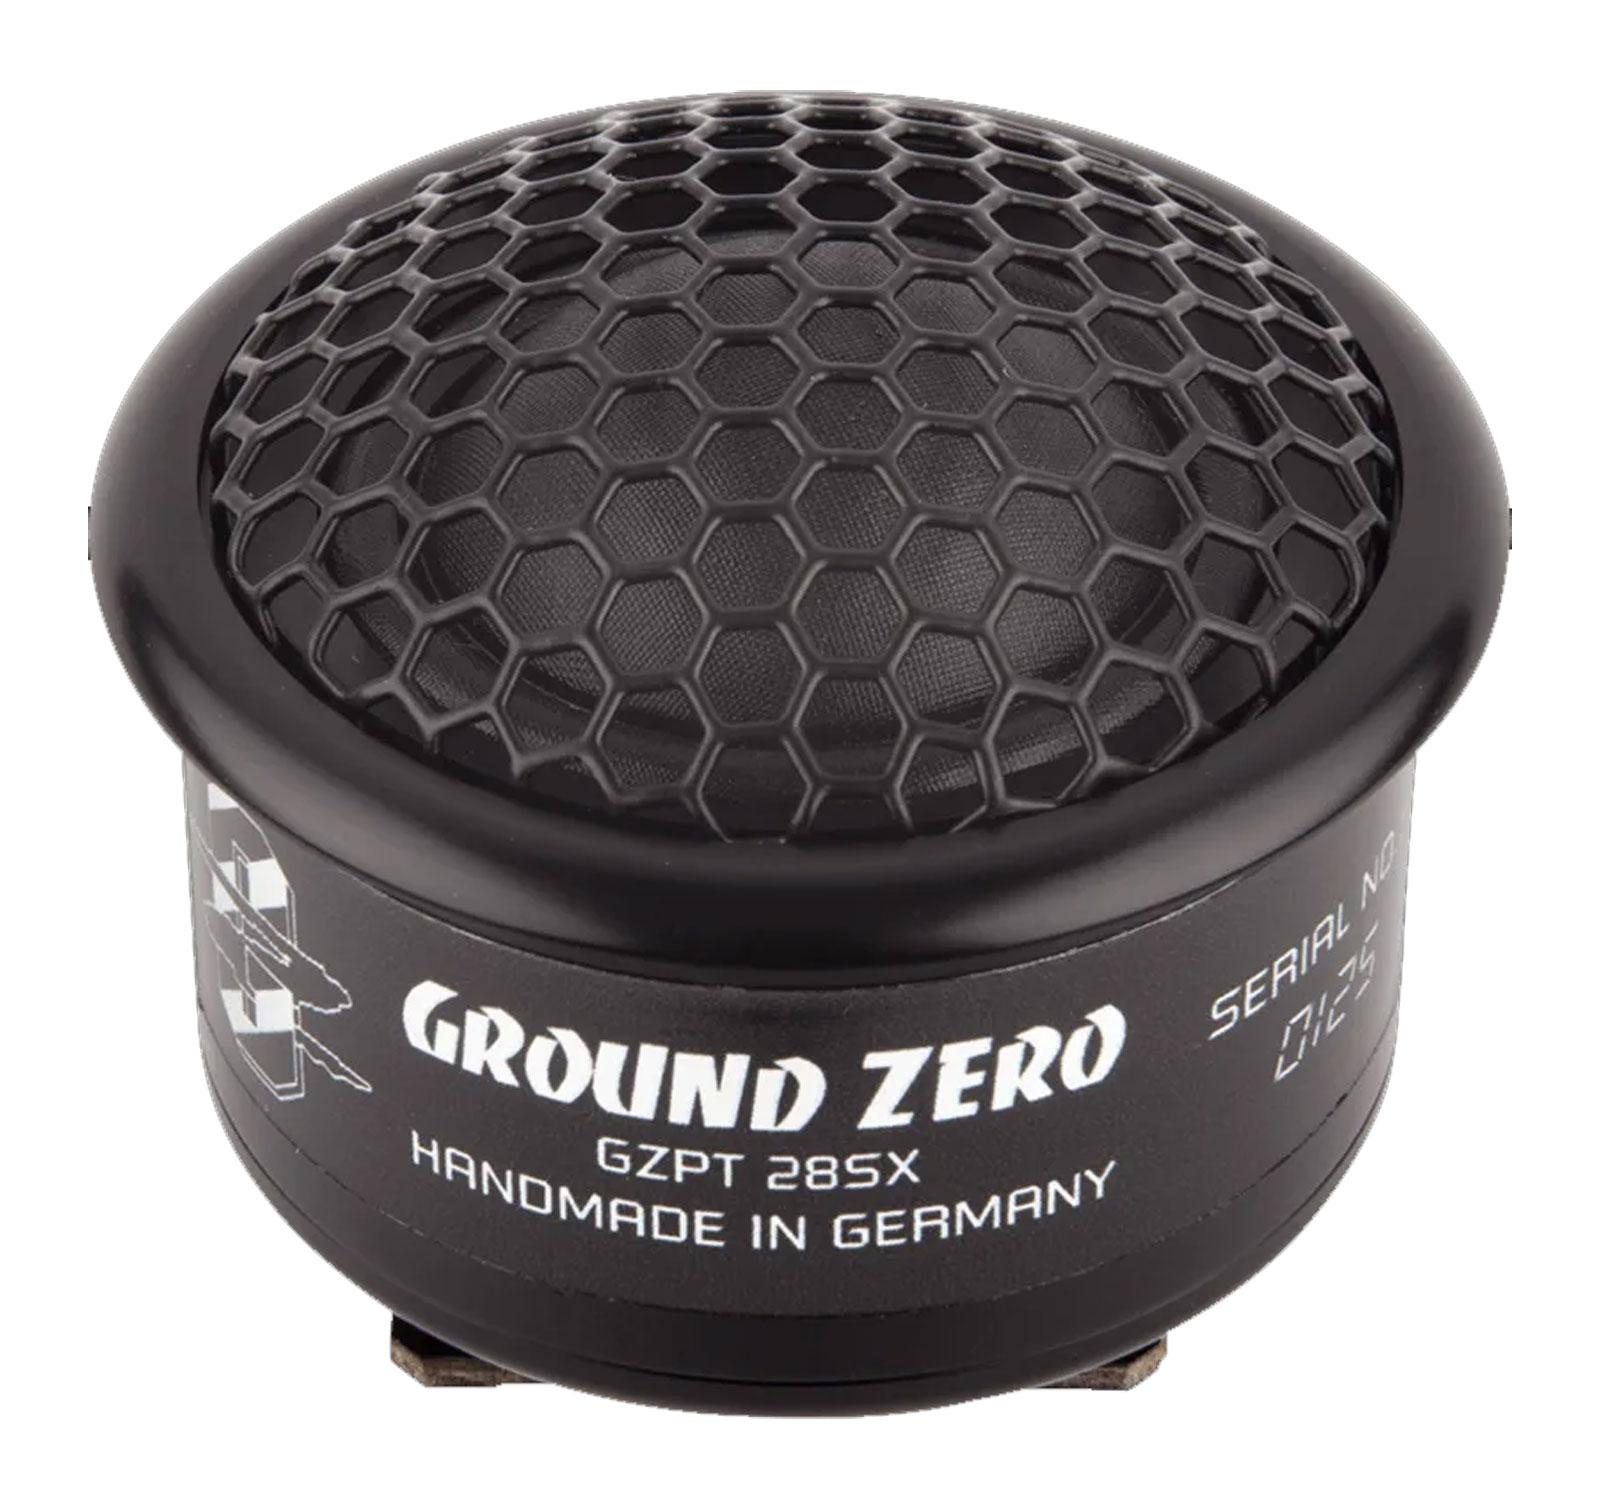 Ground Zero GZPT 28SX- 2,8 cm Hochtöner-Lautsprecher mit 150 Watt (RMS: 100 Watt)